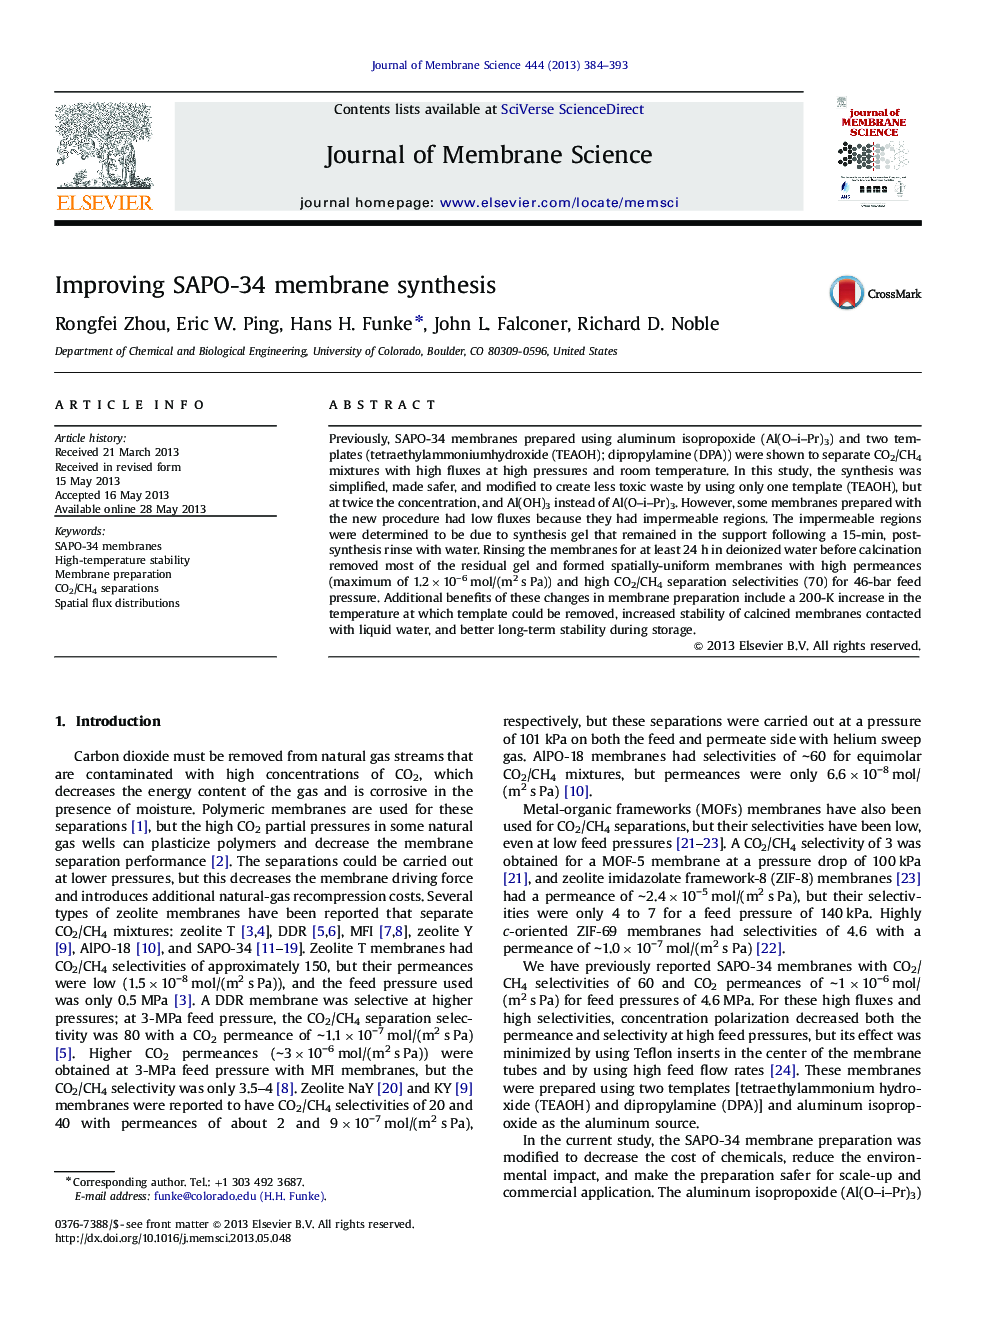 Improving SAPO-34 membrane synthesis